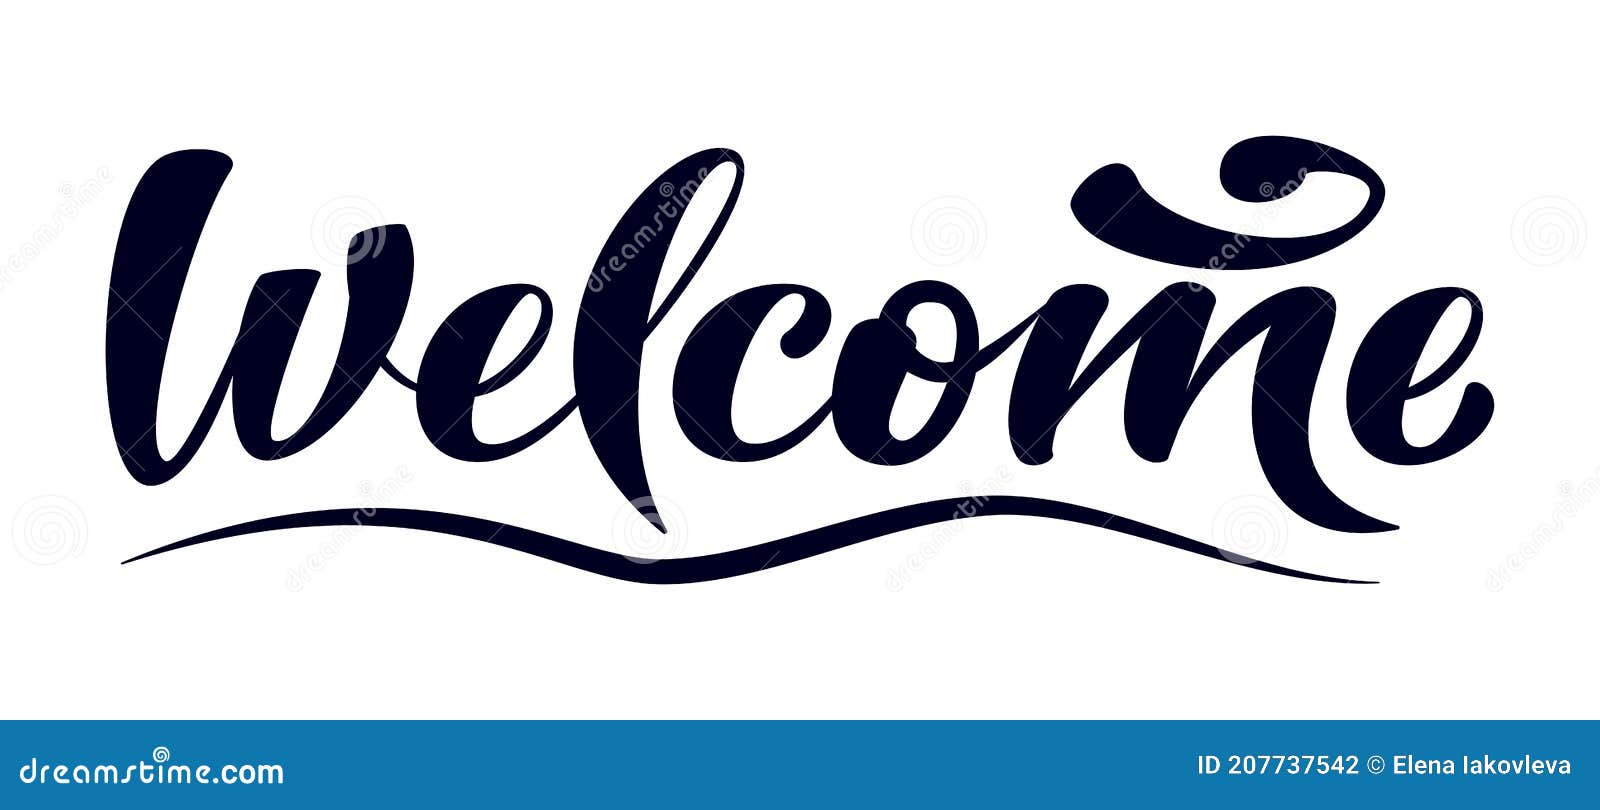 Welcome Banner. Hand Written Modern Brush Lettering Sign on White Background  Stock Vector - Illustration of label, logo: 207737542